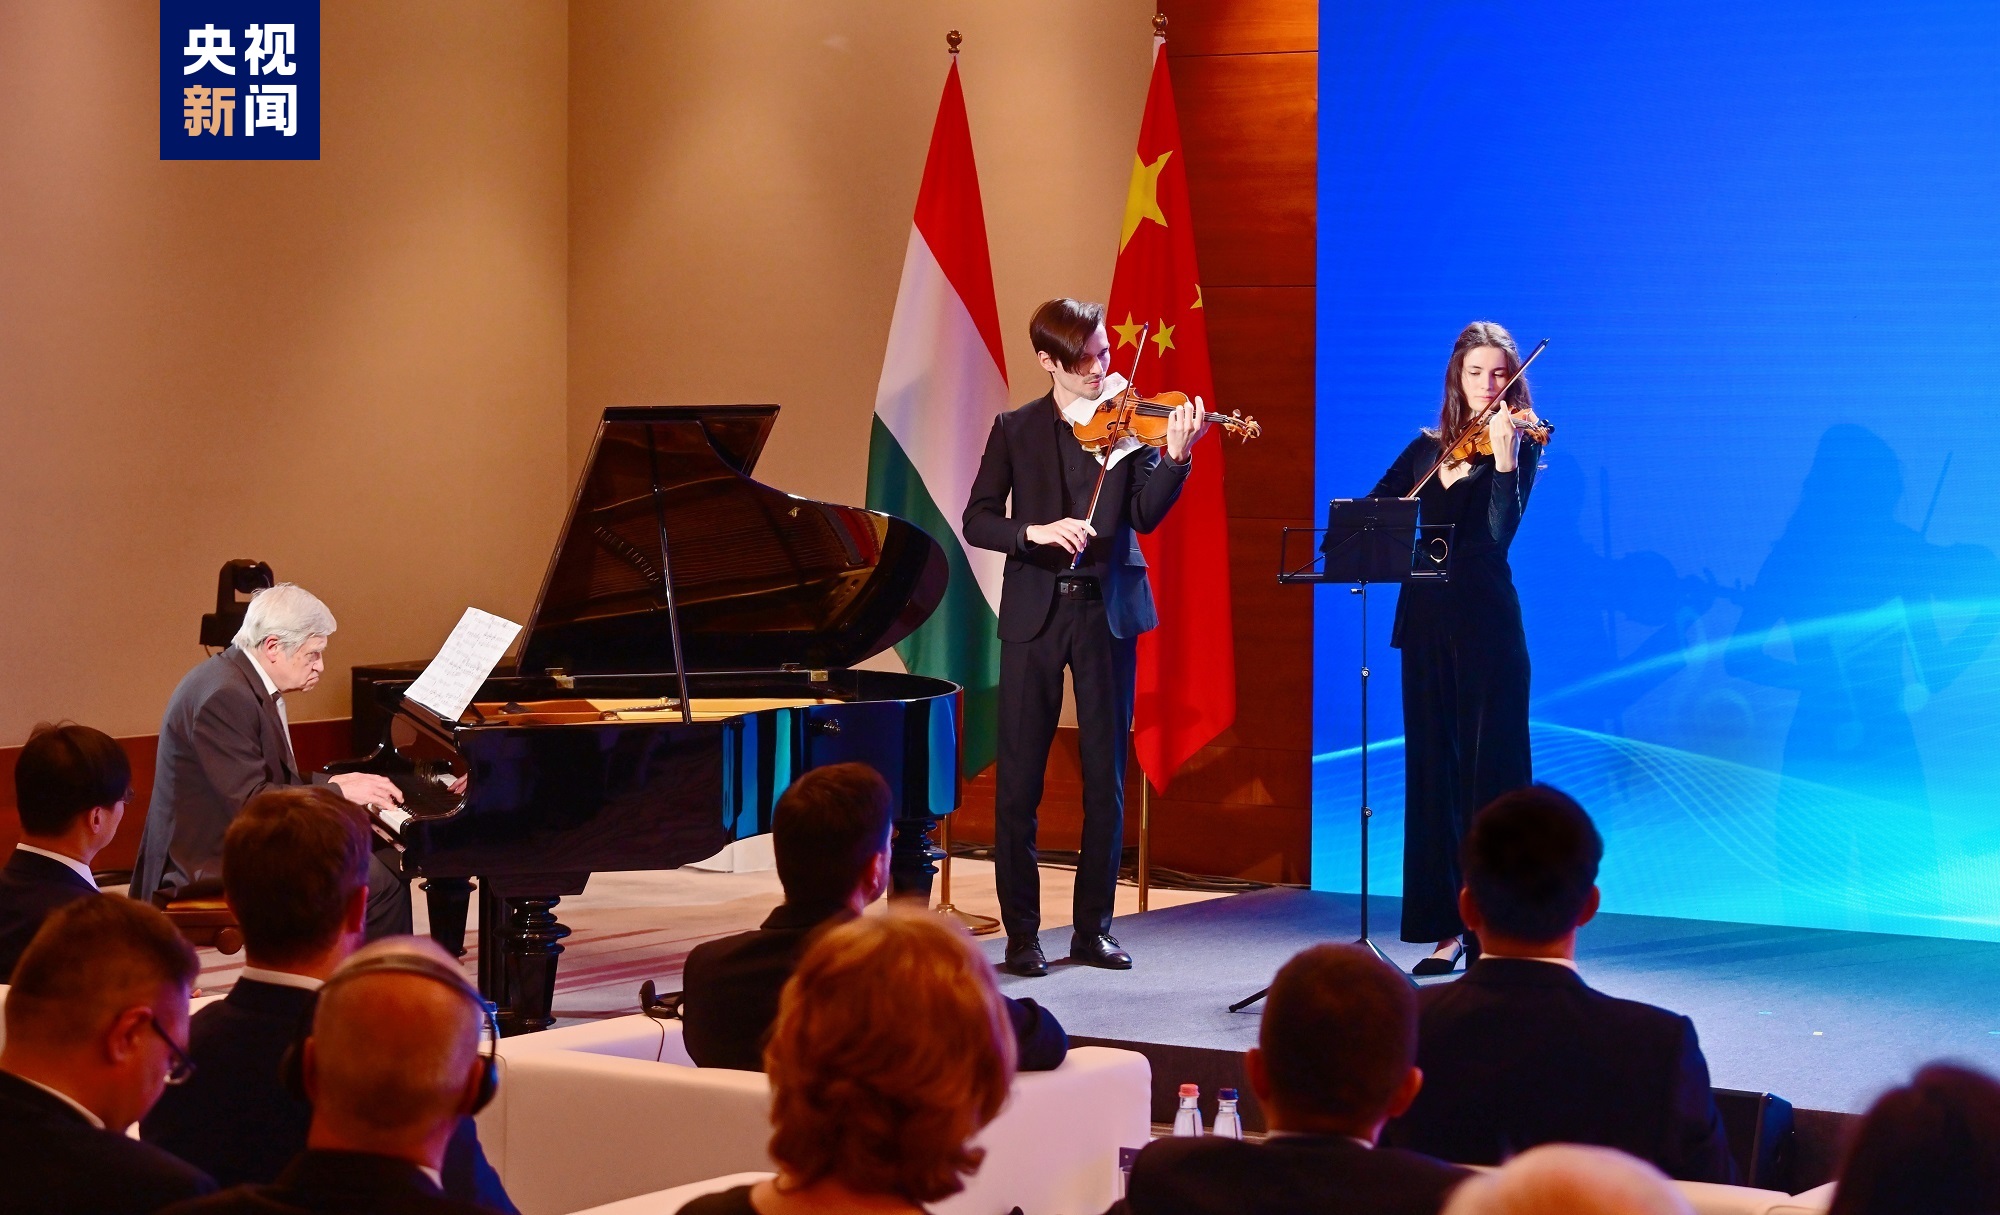 匈牙利李斯特音乐学院艺术家现场合奏中国歌曲《在希望的田野上》